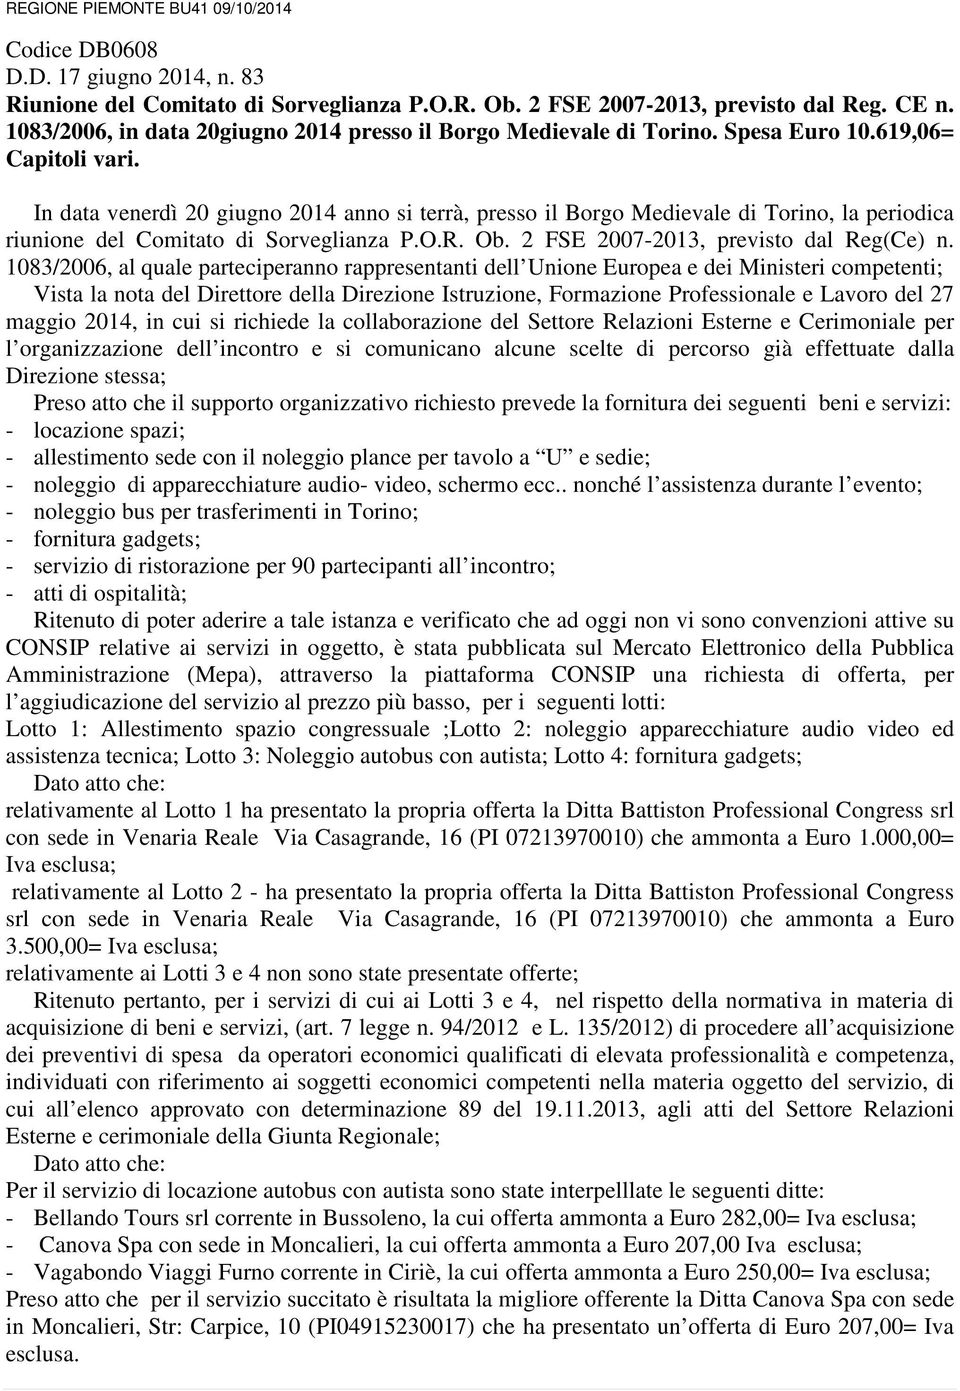 In data venerdì 20 giugno 2014 anno si terrà, presso il Borgo Medievale di Torino, la periodica riunione del Comitato di Sorveglianza P.O.R. Ob. 2 FSE 2007-2013, previsto dal Reg(Ce) n.